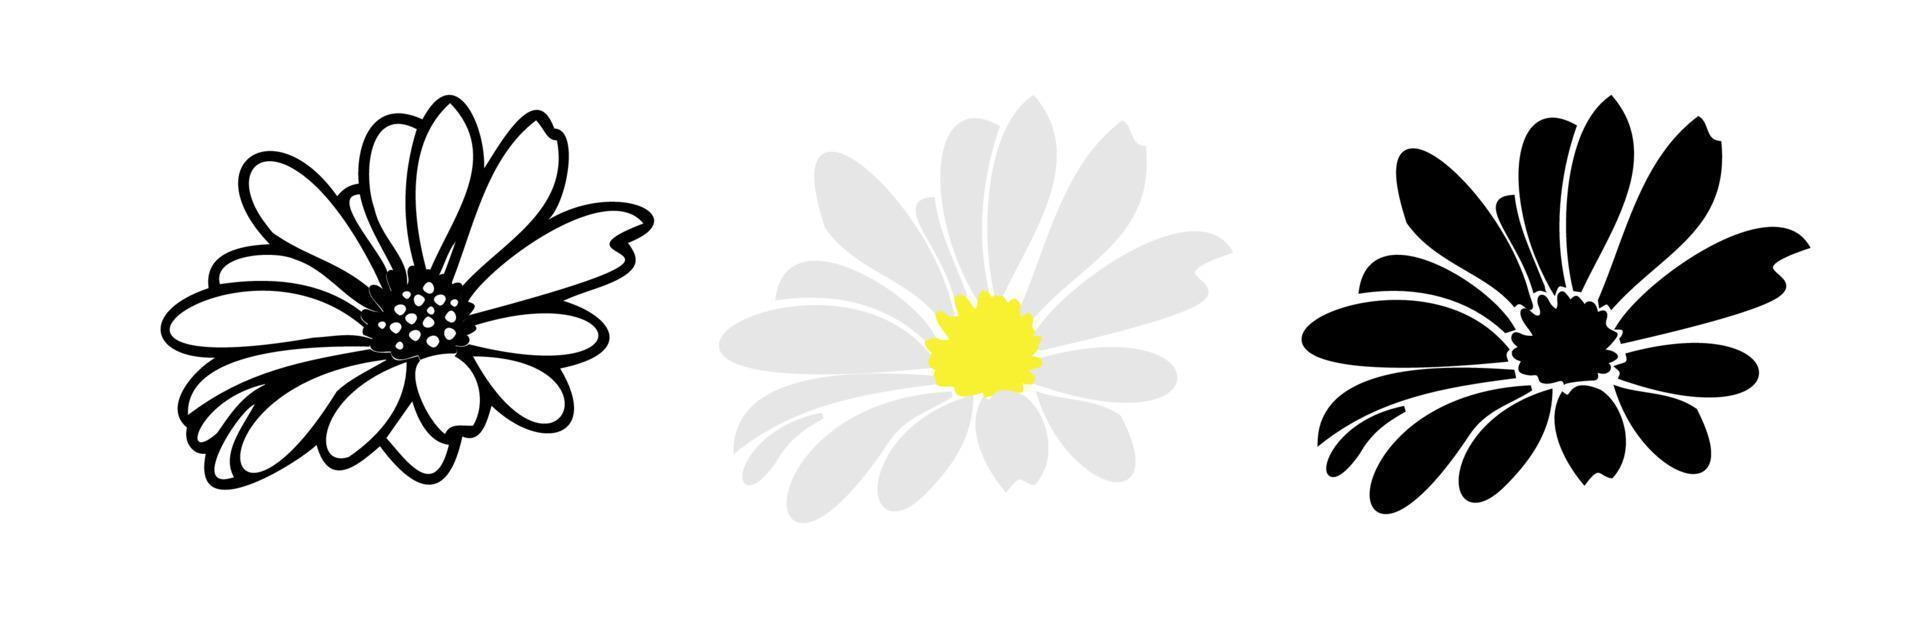 daisy blommiga element handritad vektor